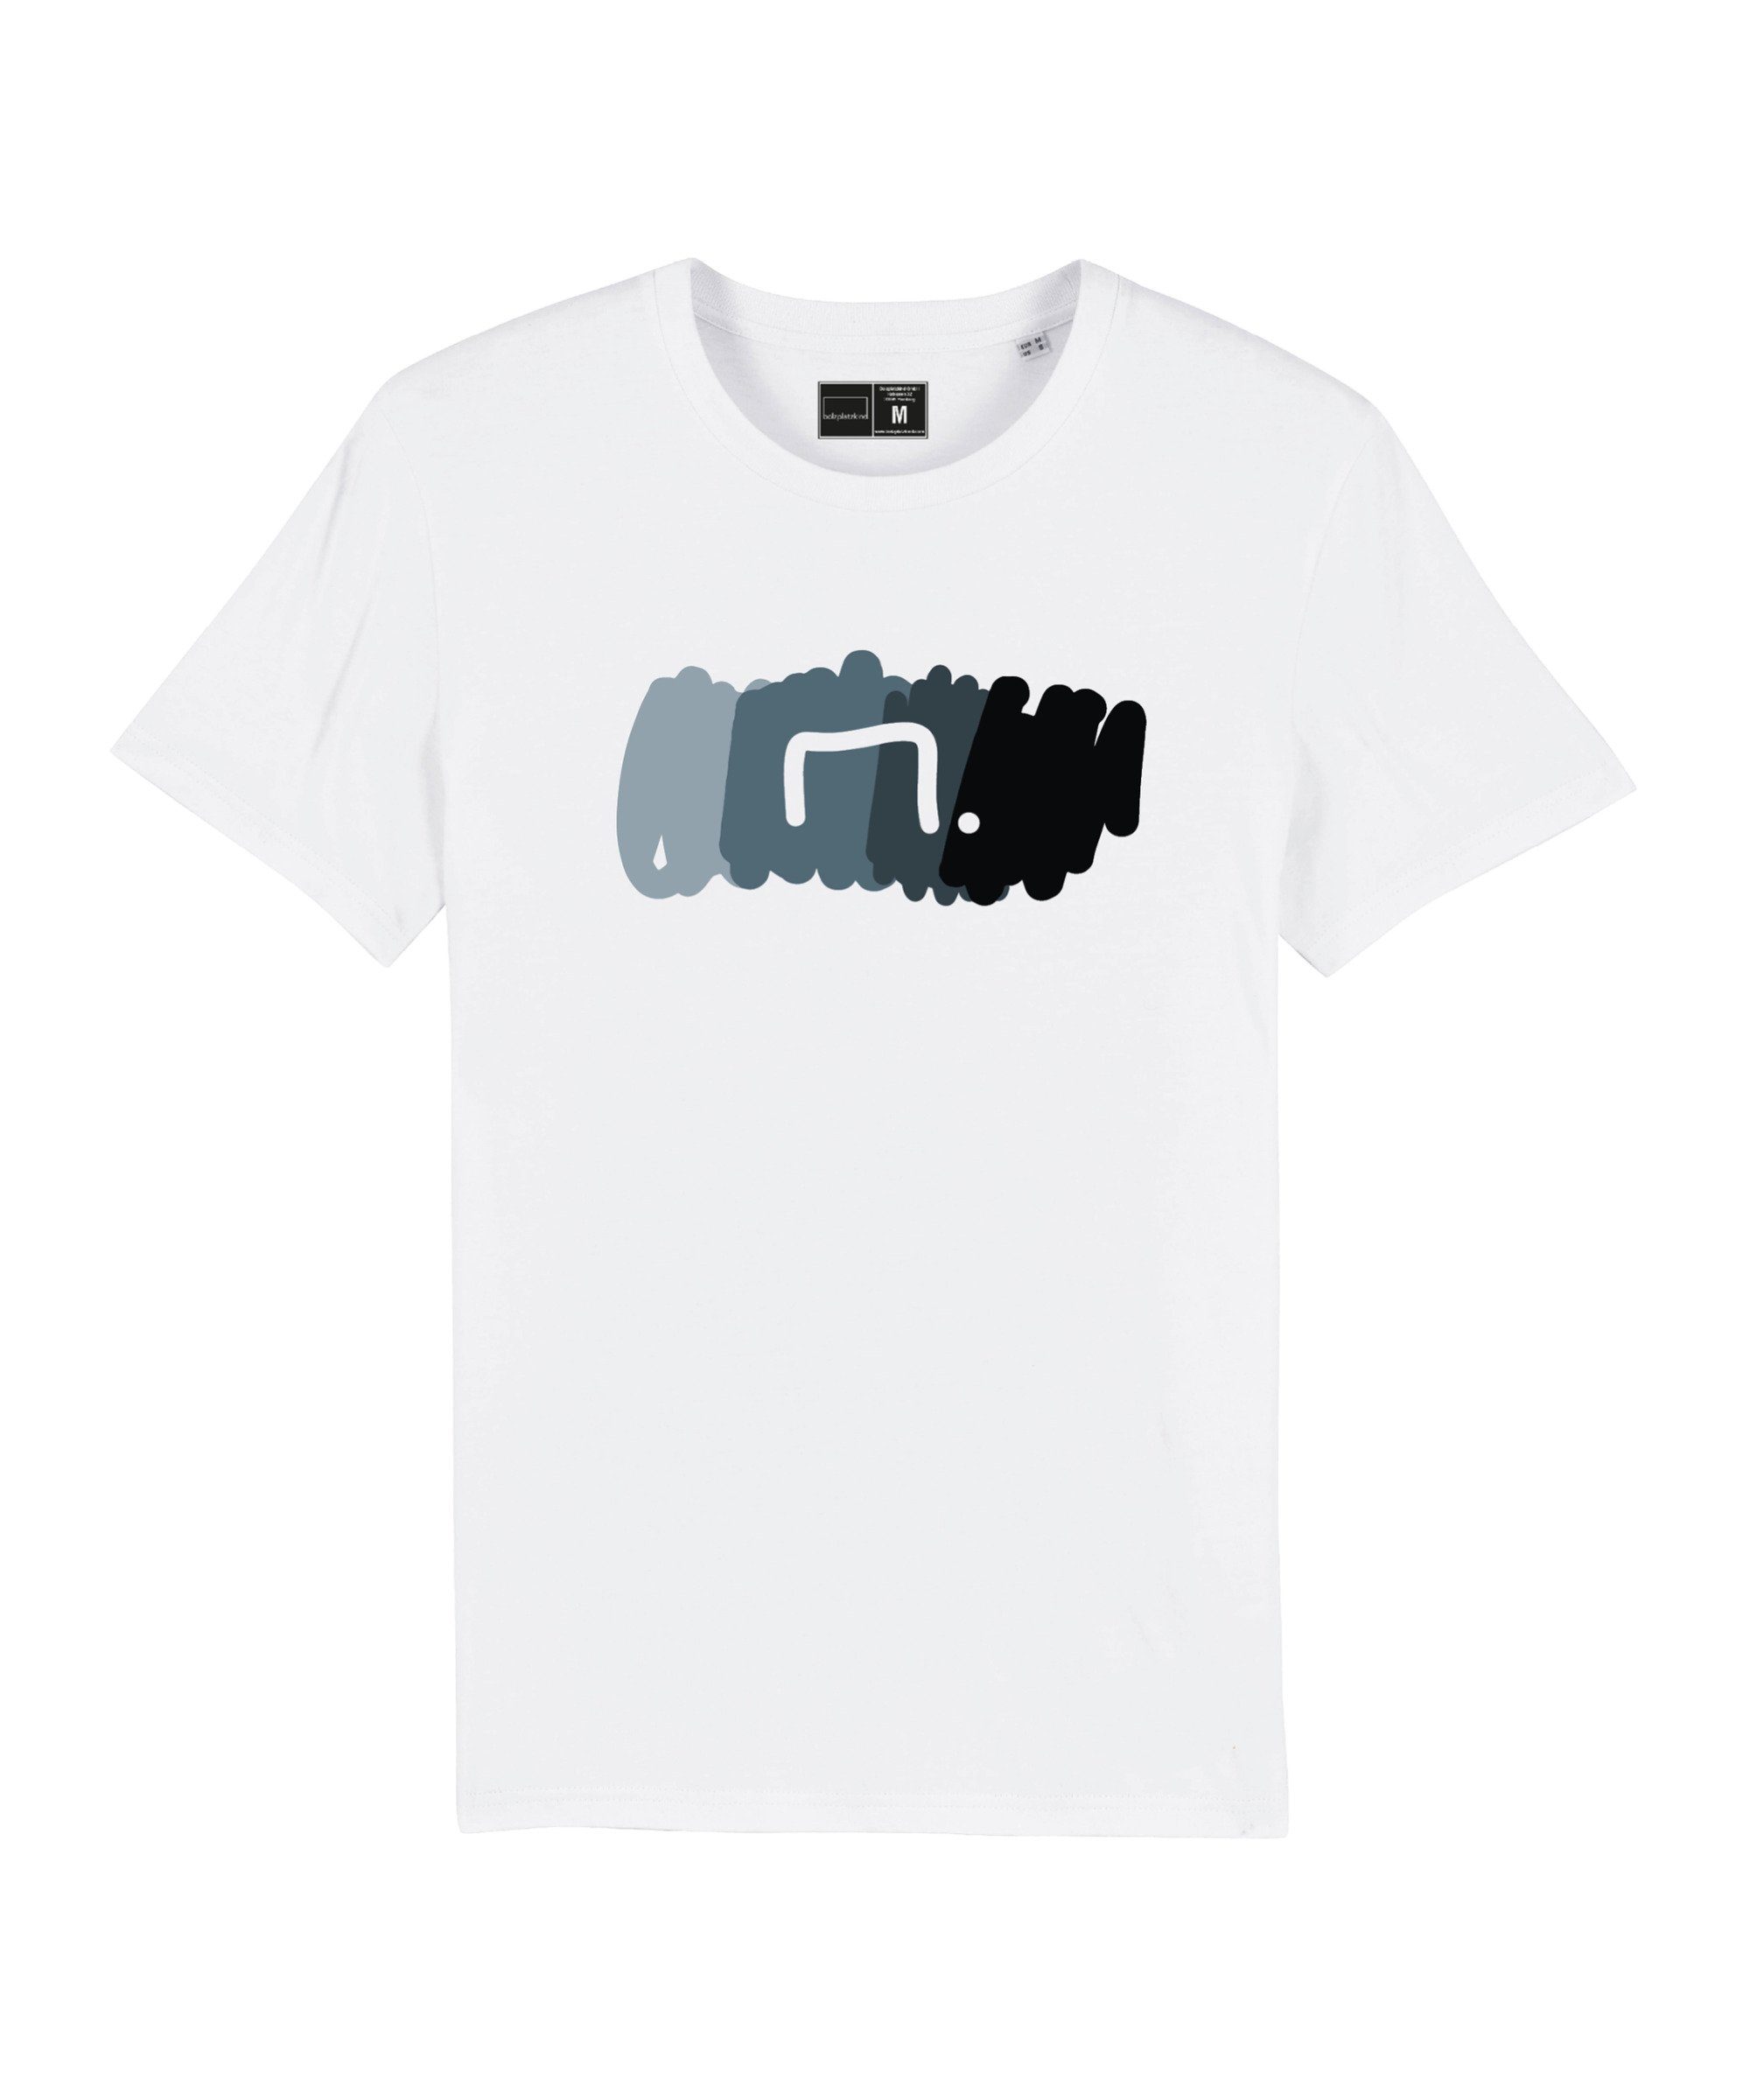 weissgrau Nachhaltiges "Free" Produkt T-Shirt T-Shirt Bolzplatzkind